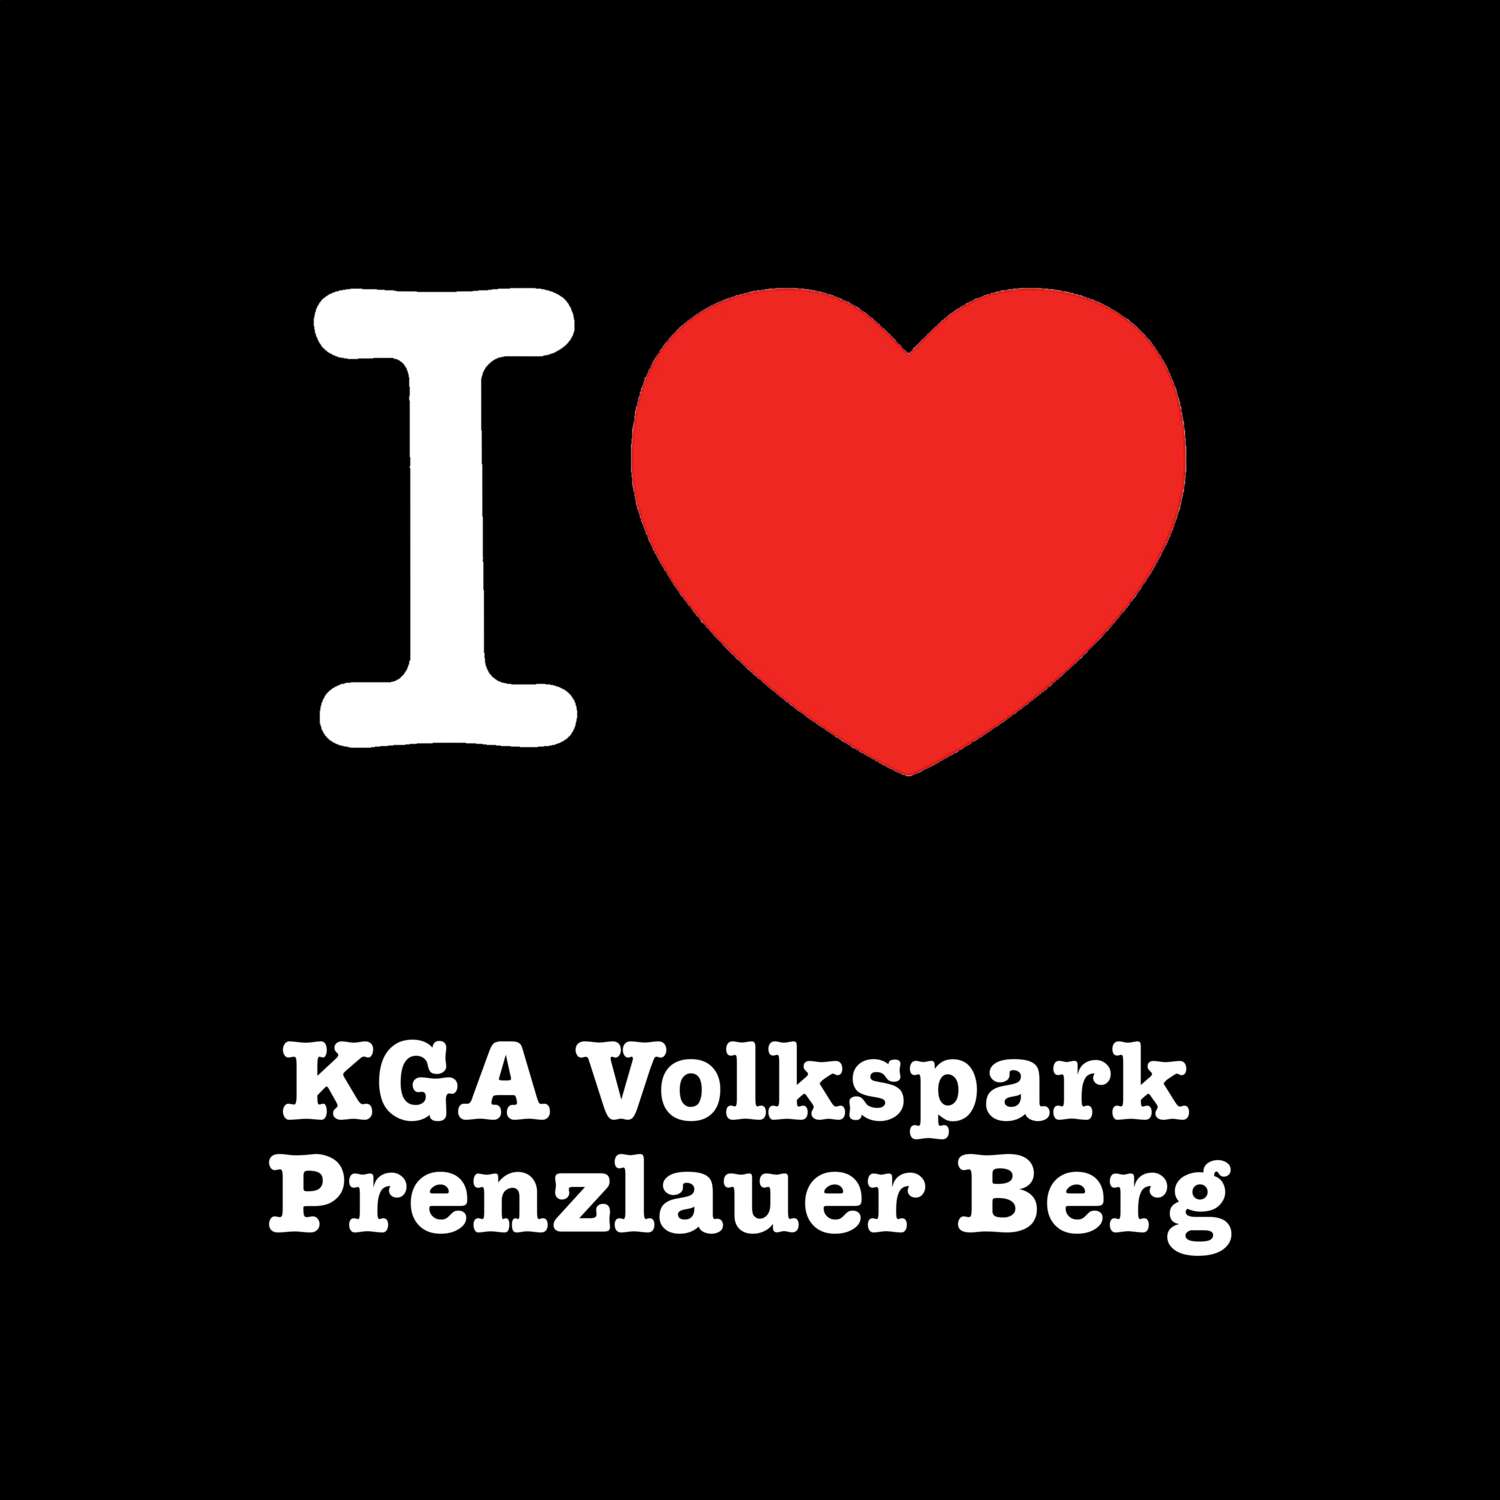 KGA Volkspark Prenzlauer Berg T-Shirt »I love«